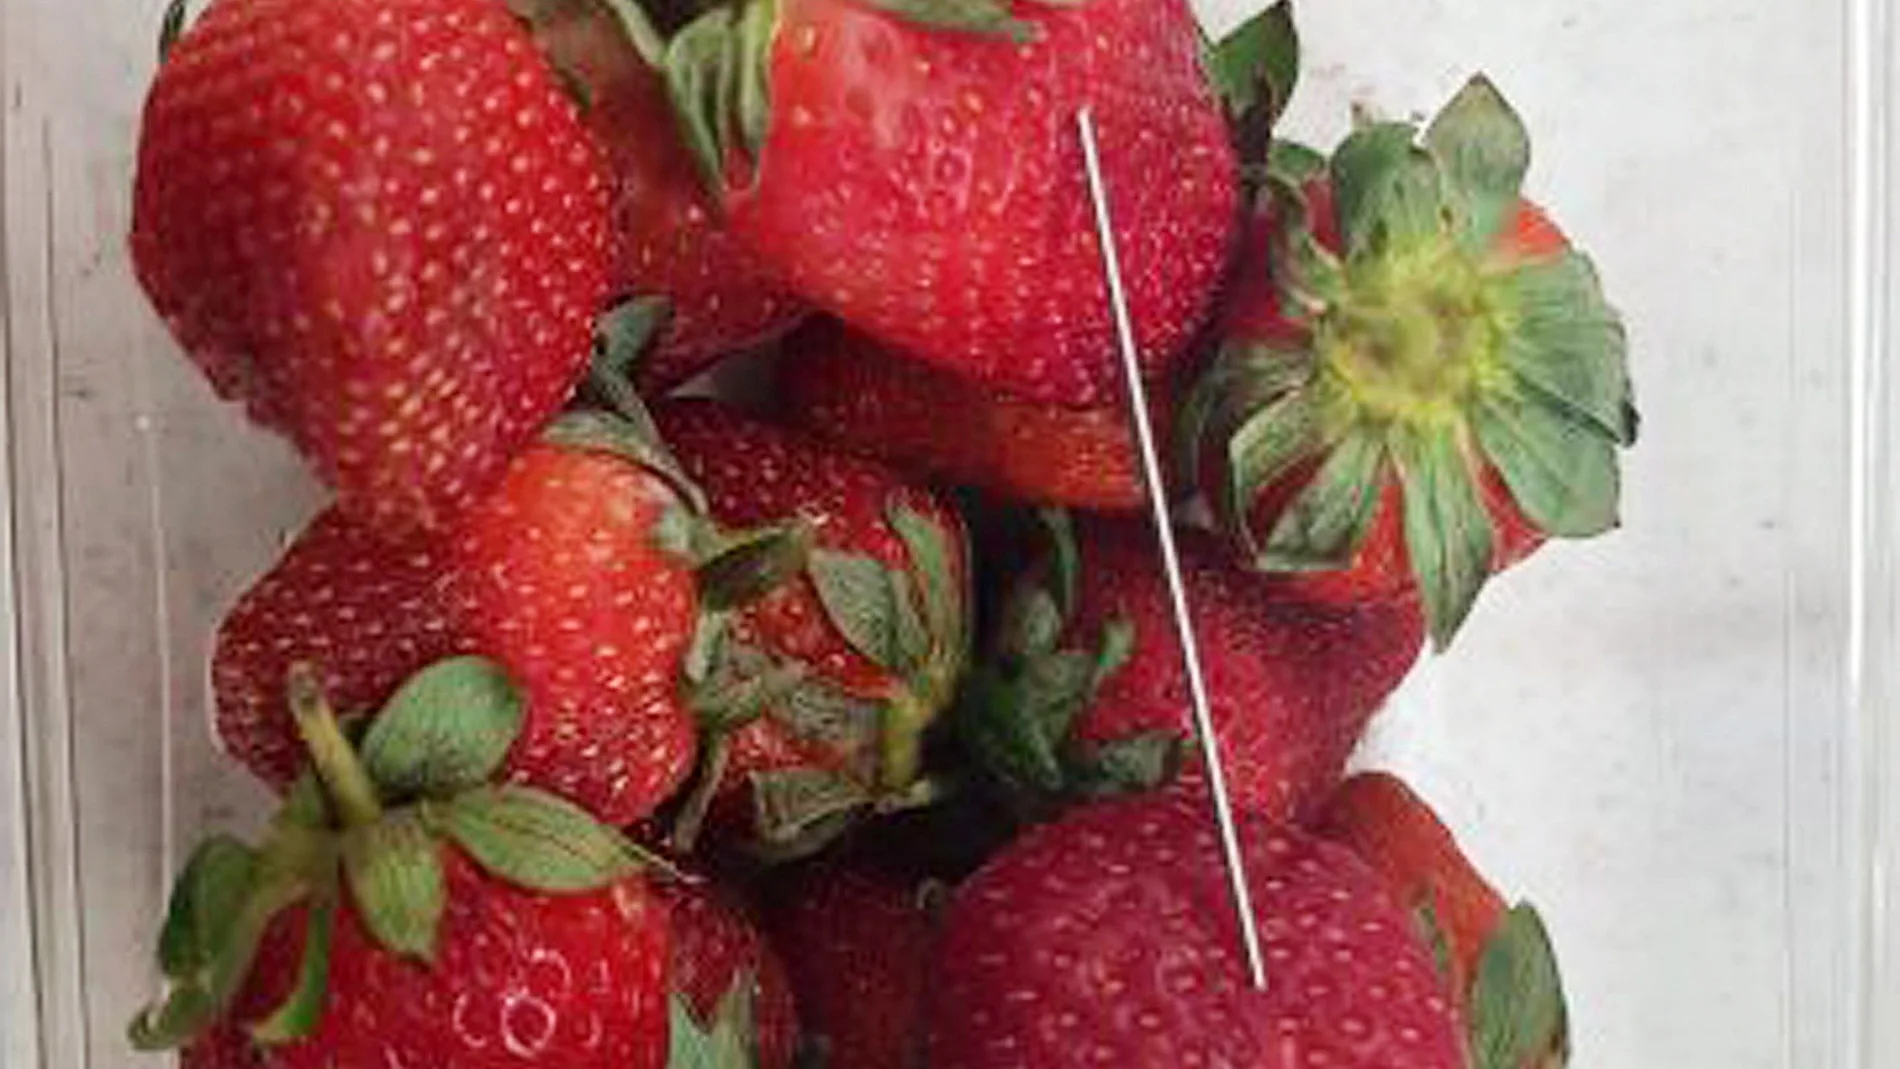 Fotografía que facilita la policía de Queensland en la que se puede apreciar una aguja en un paquete de fresas